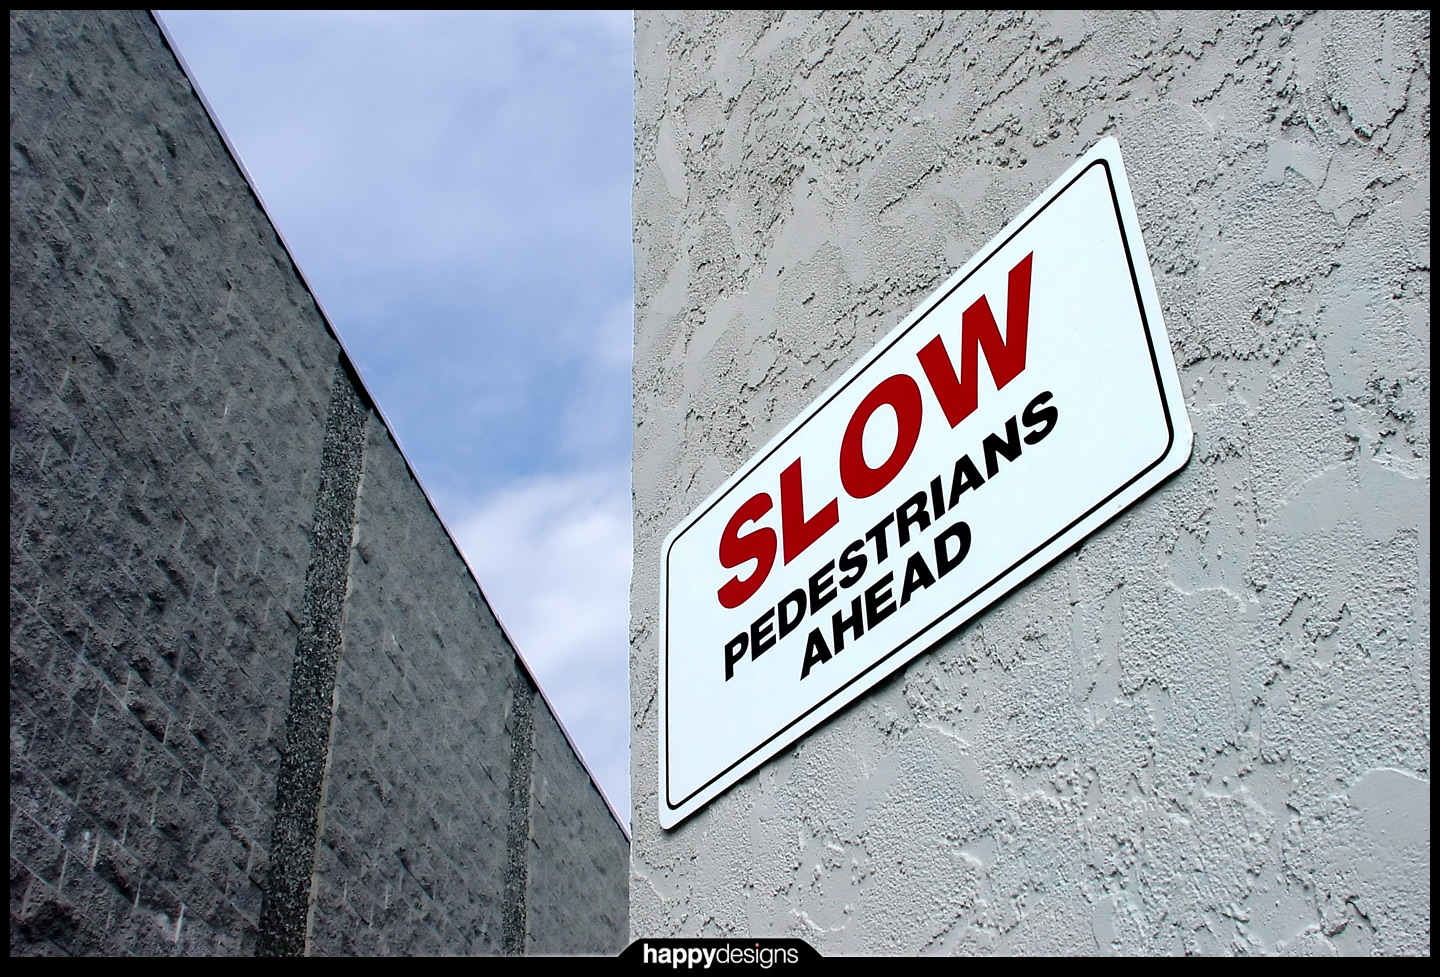 20050208 - slow pedestrians